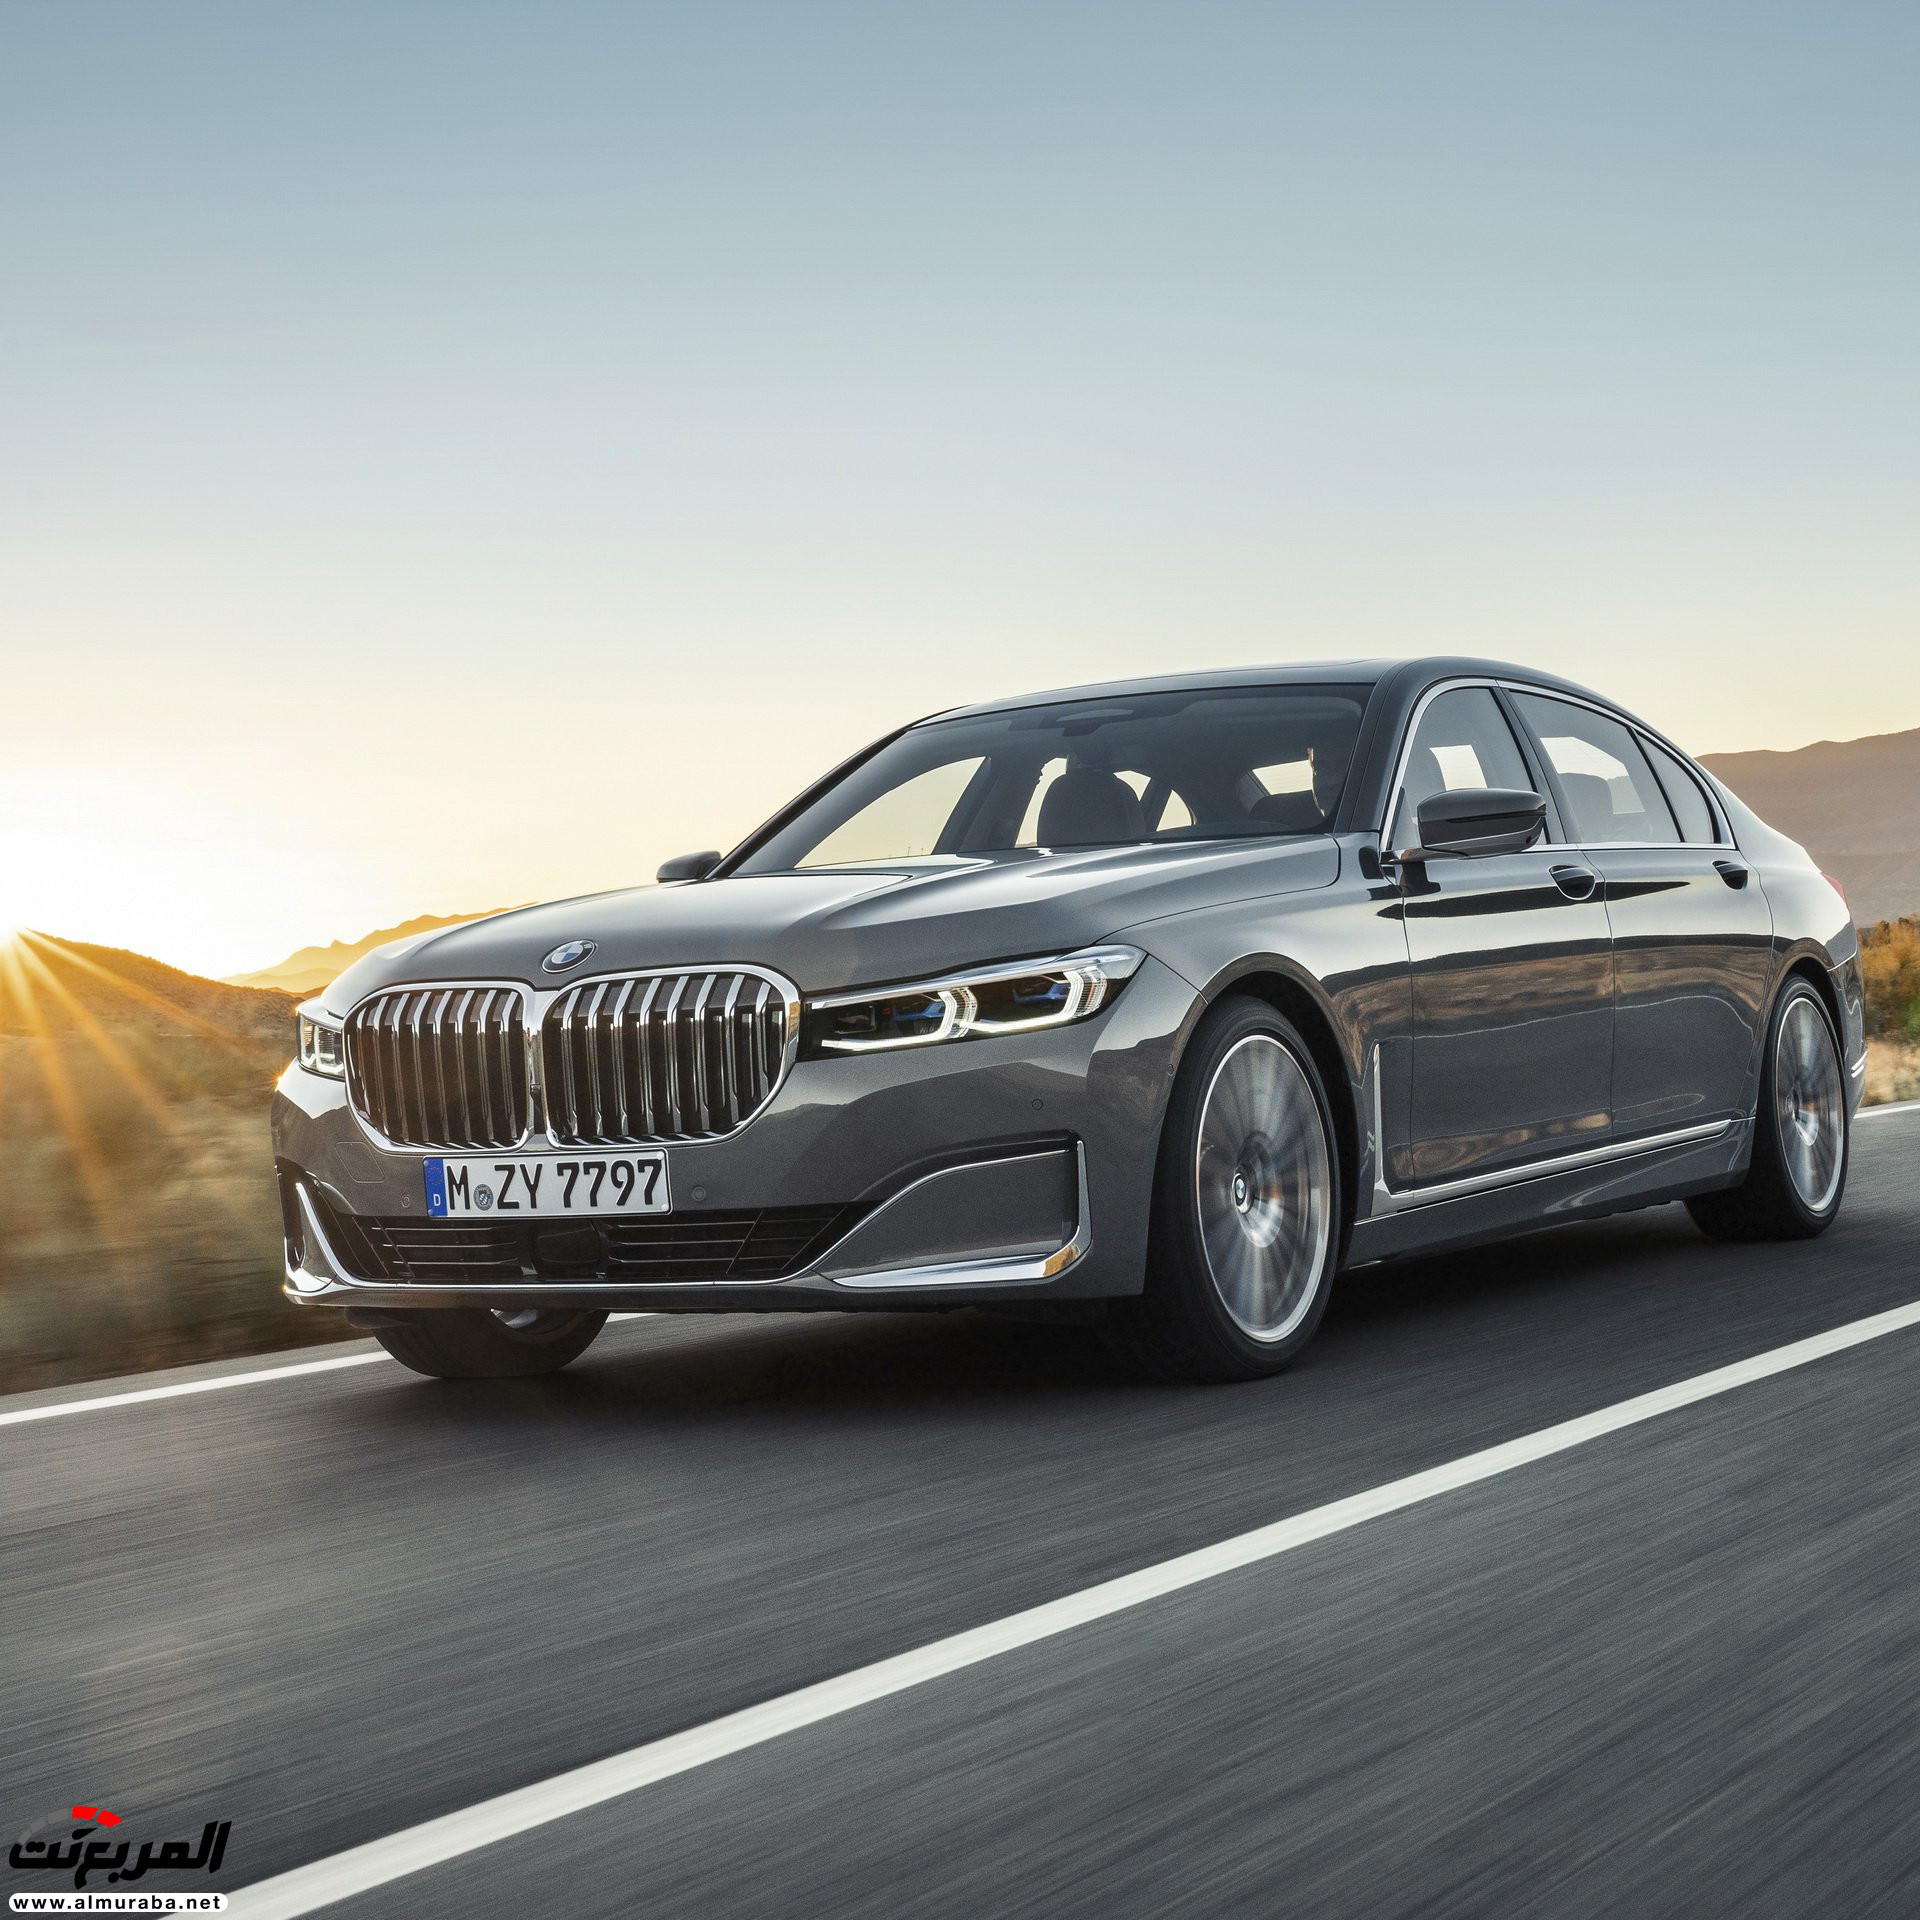 بي ام دبليو الفئة السابعة 2020 المحدثة تكشف نفسها رسمياً "صور ومواصفات" BMW 7 Series 65